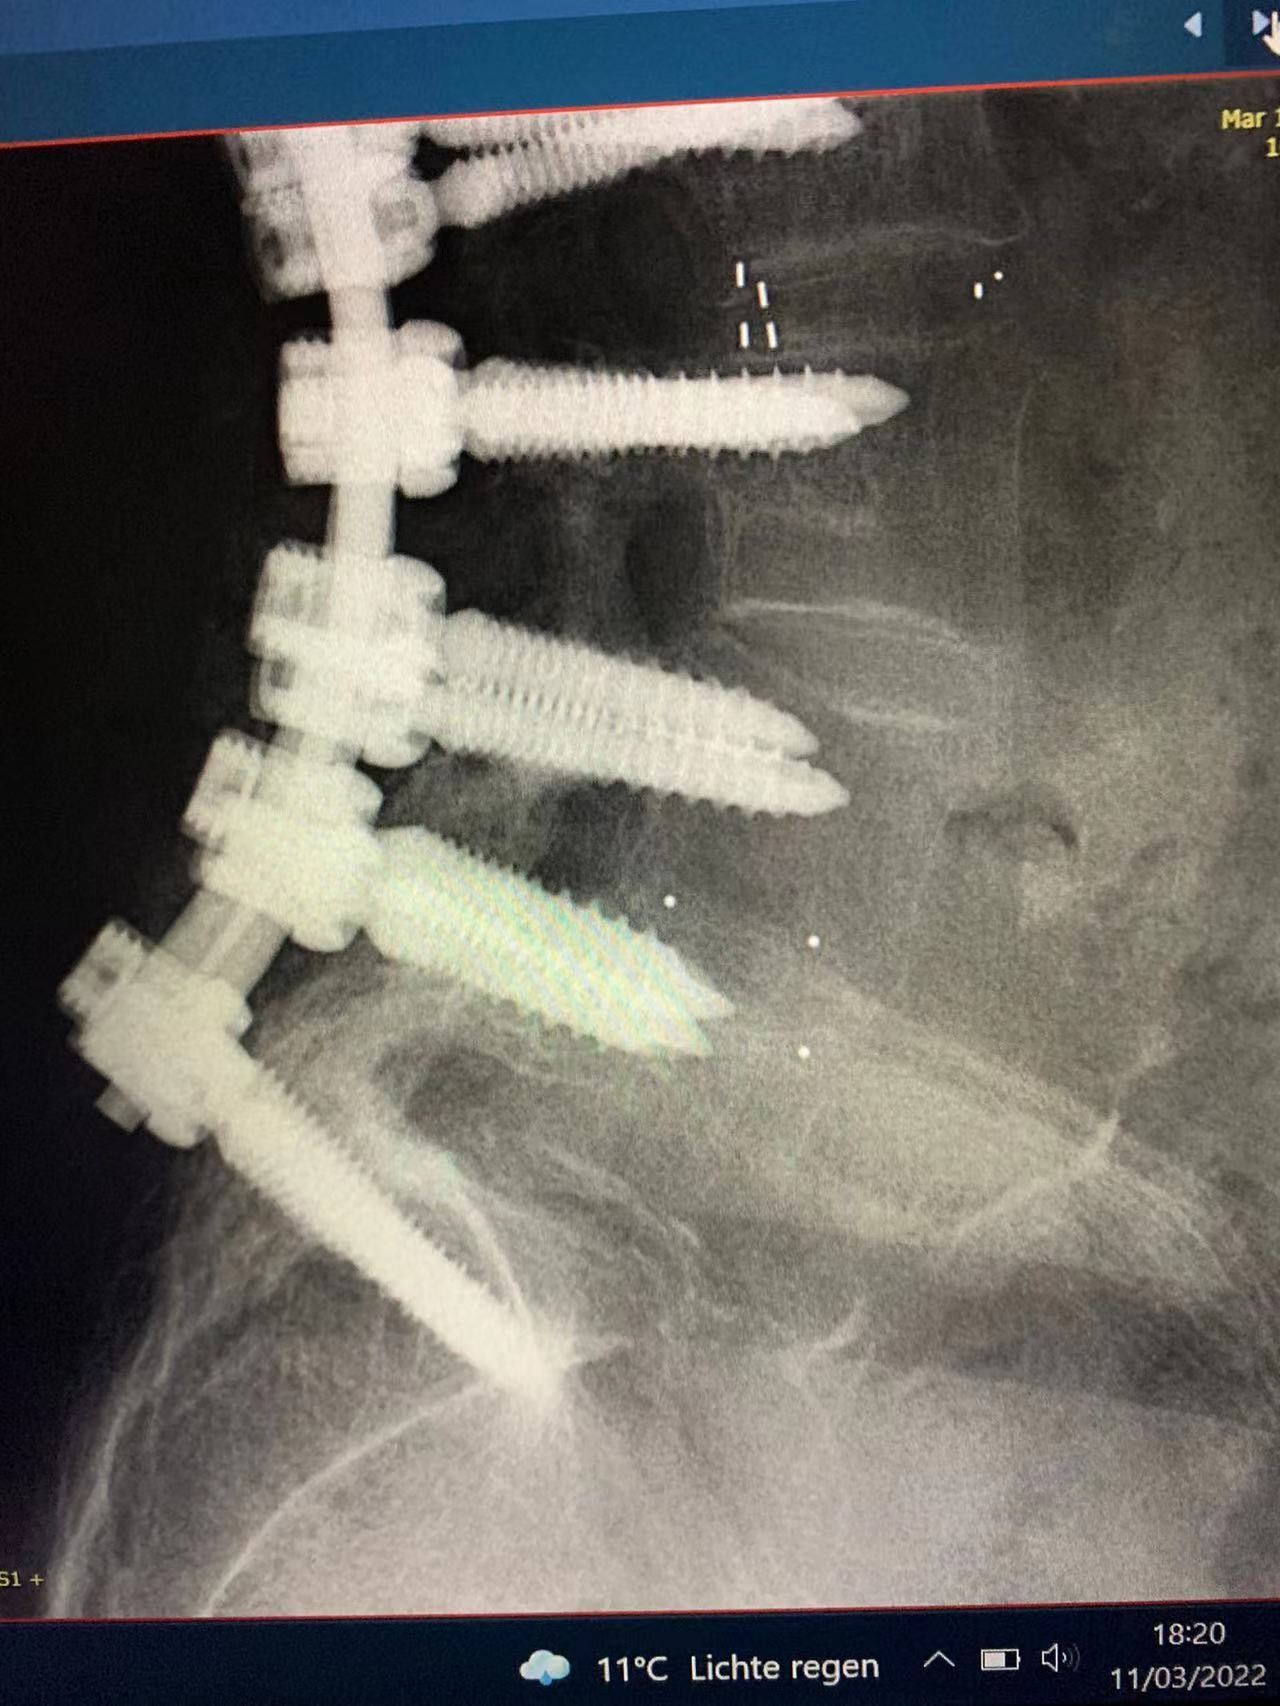 último caso de la compañía sobre Fijación interna quirúrgica espinal acertada